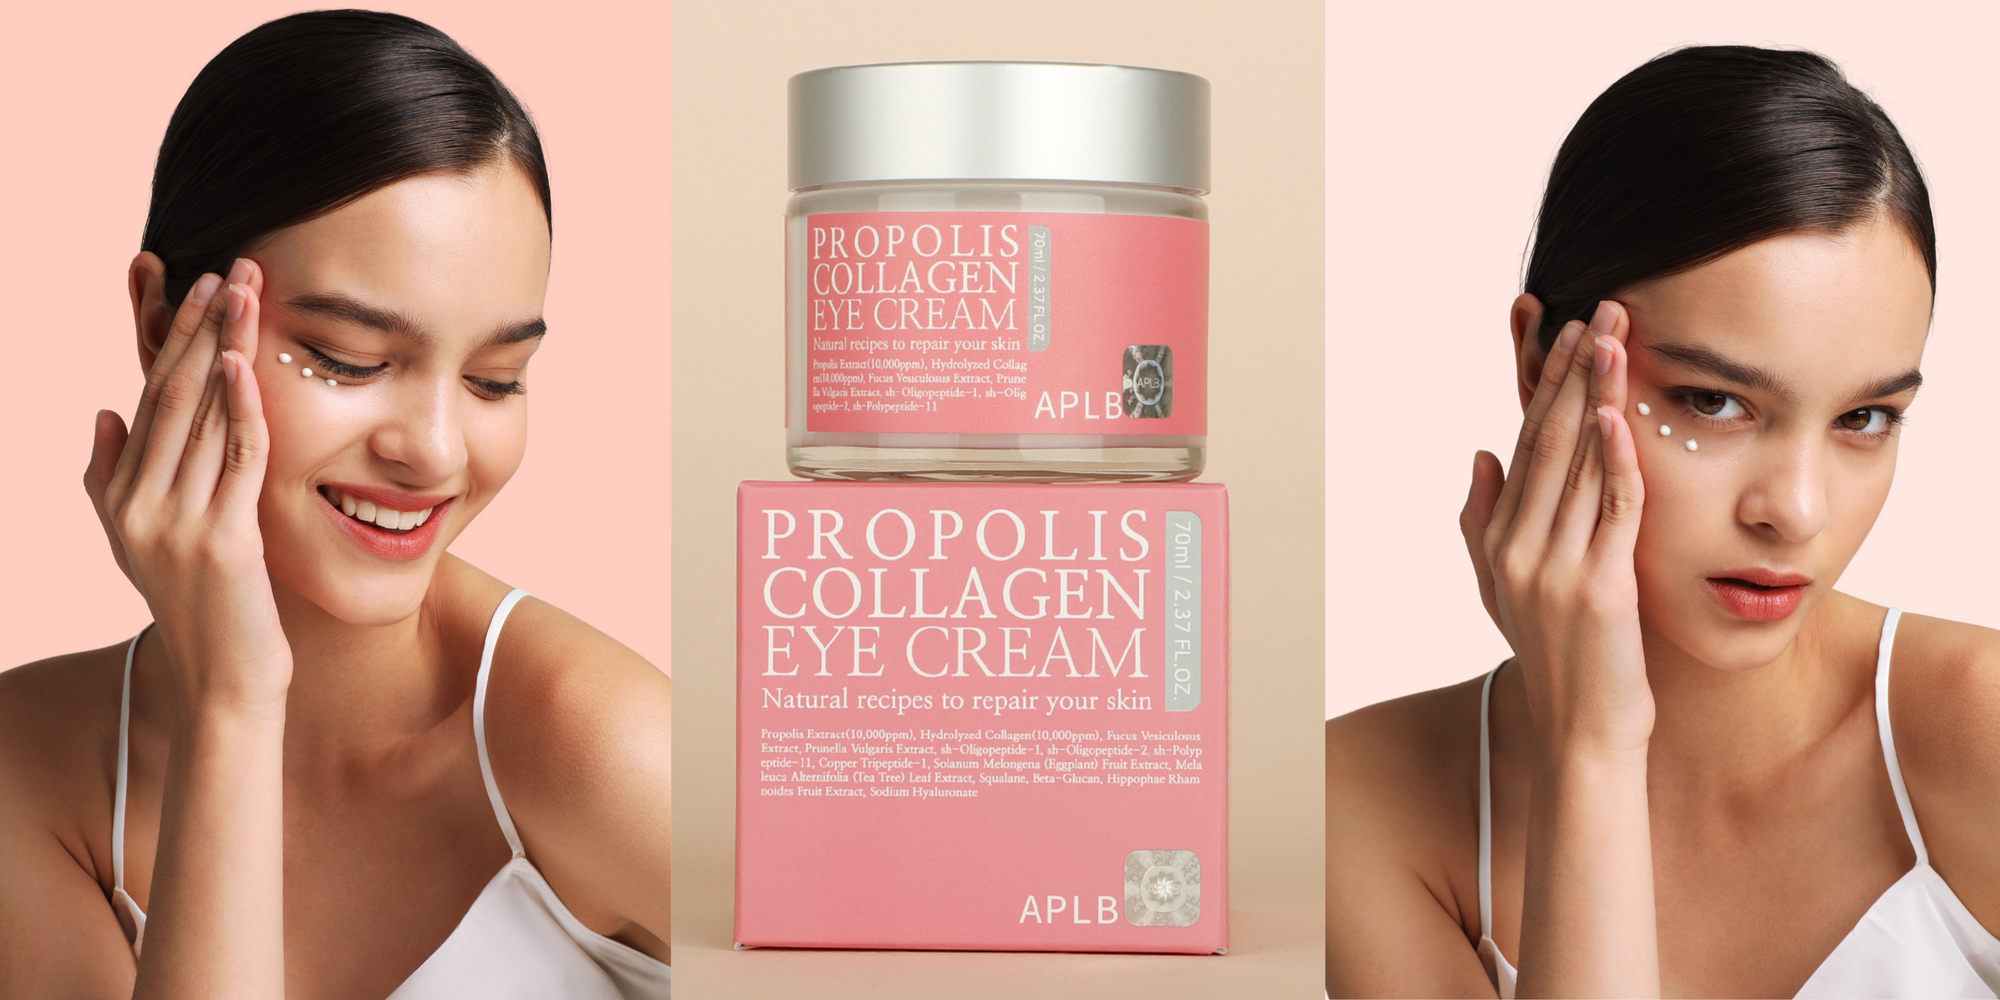 Do You Really Need An Eye Cream?